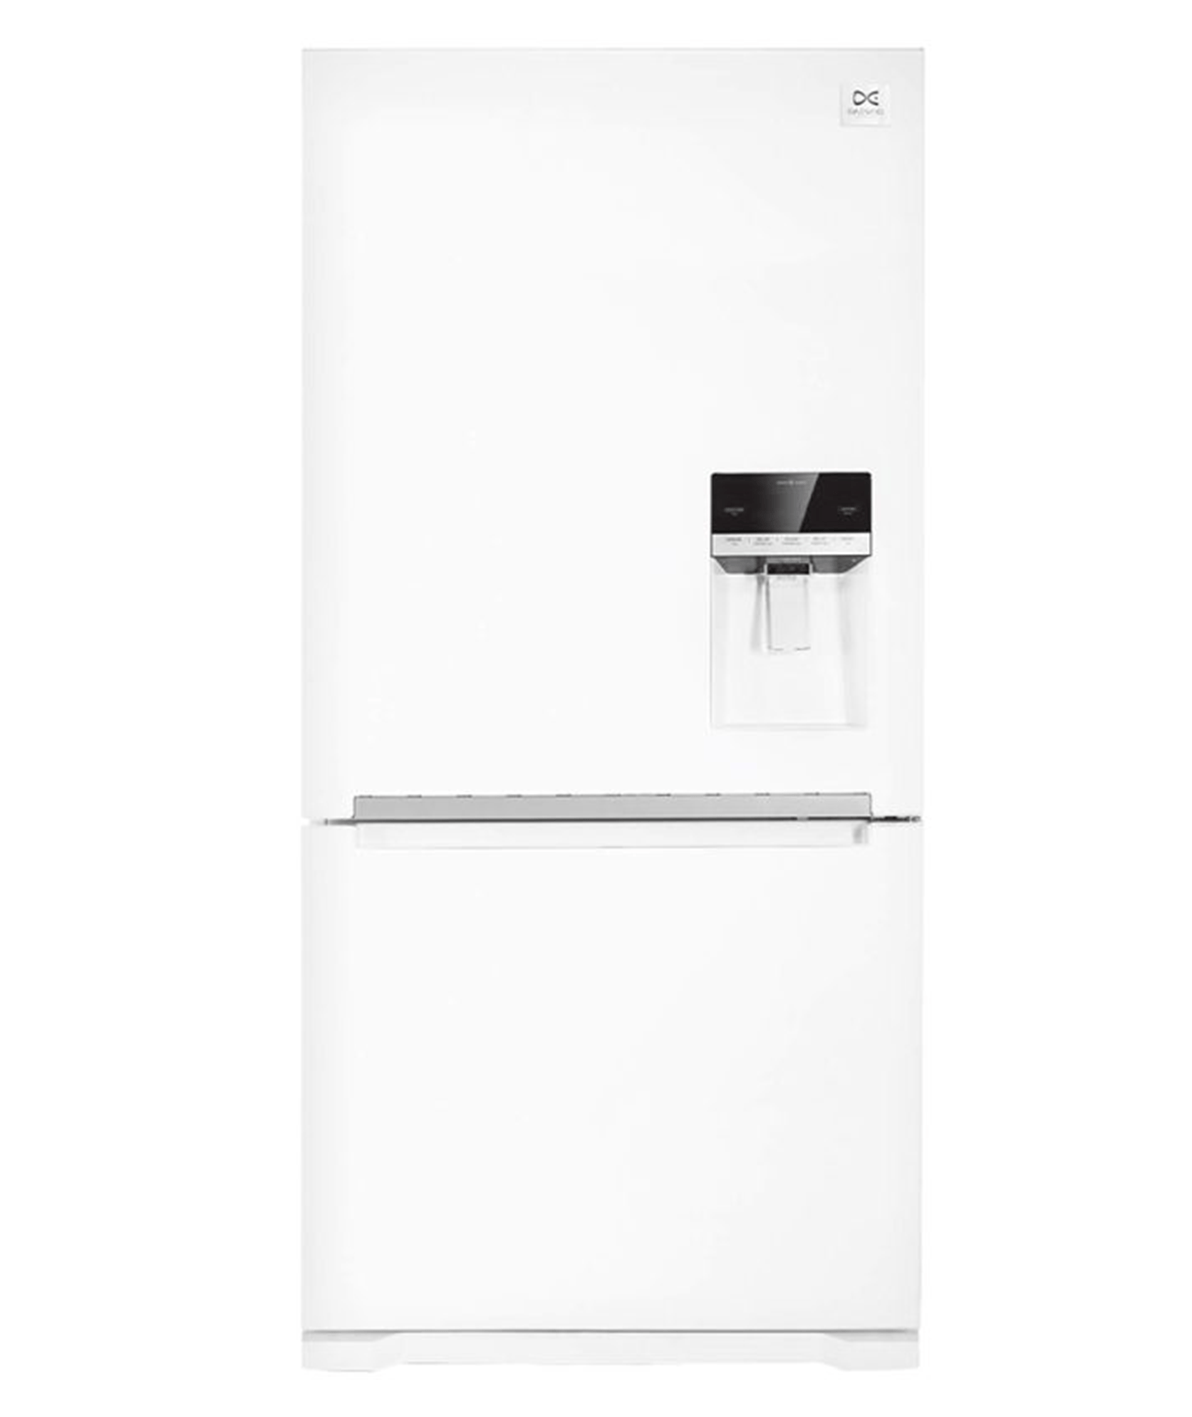 یخچال فریزر دوو 28 فوت DB-2920GW رنگ سفید براق - نمایندگی رسمی دوو فروشگاهپاکخصال